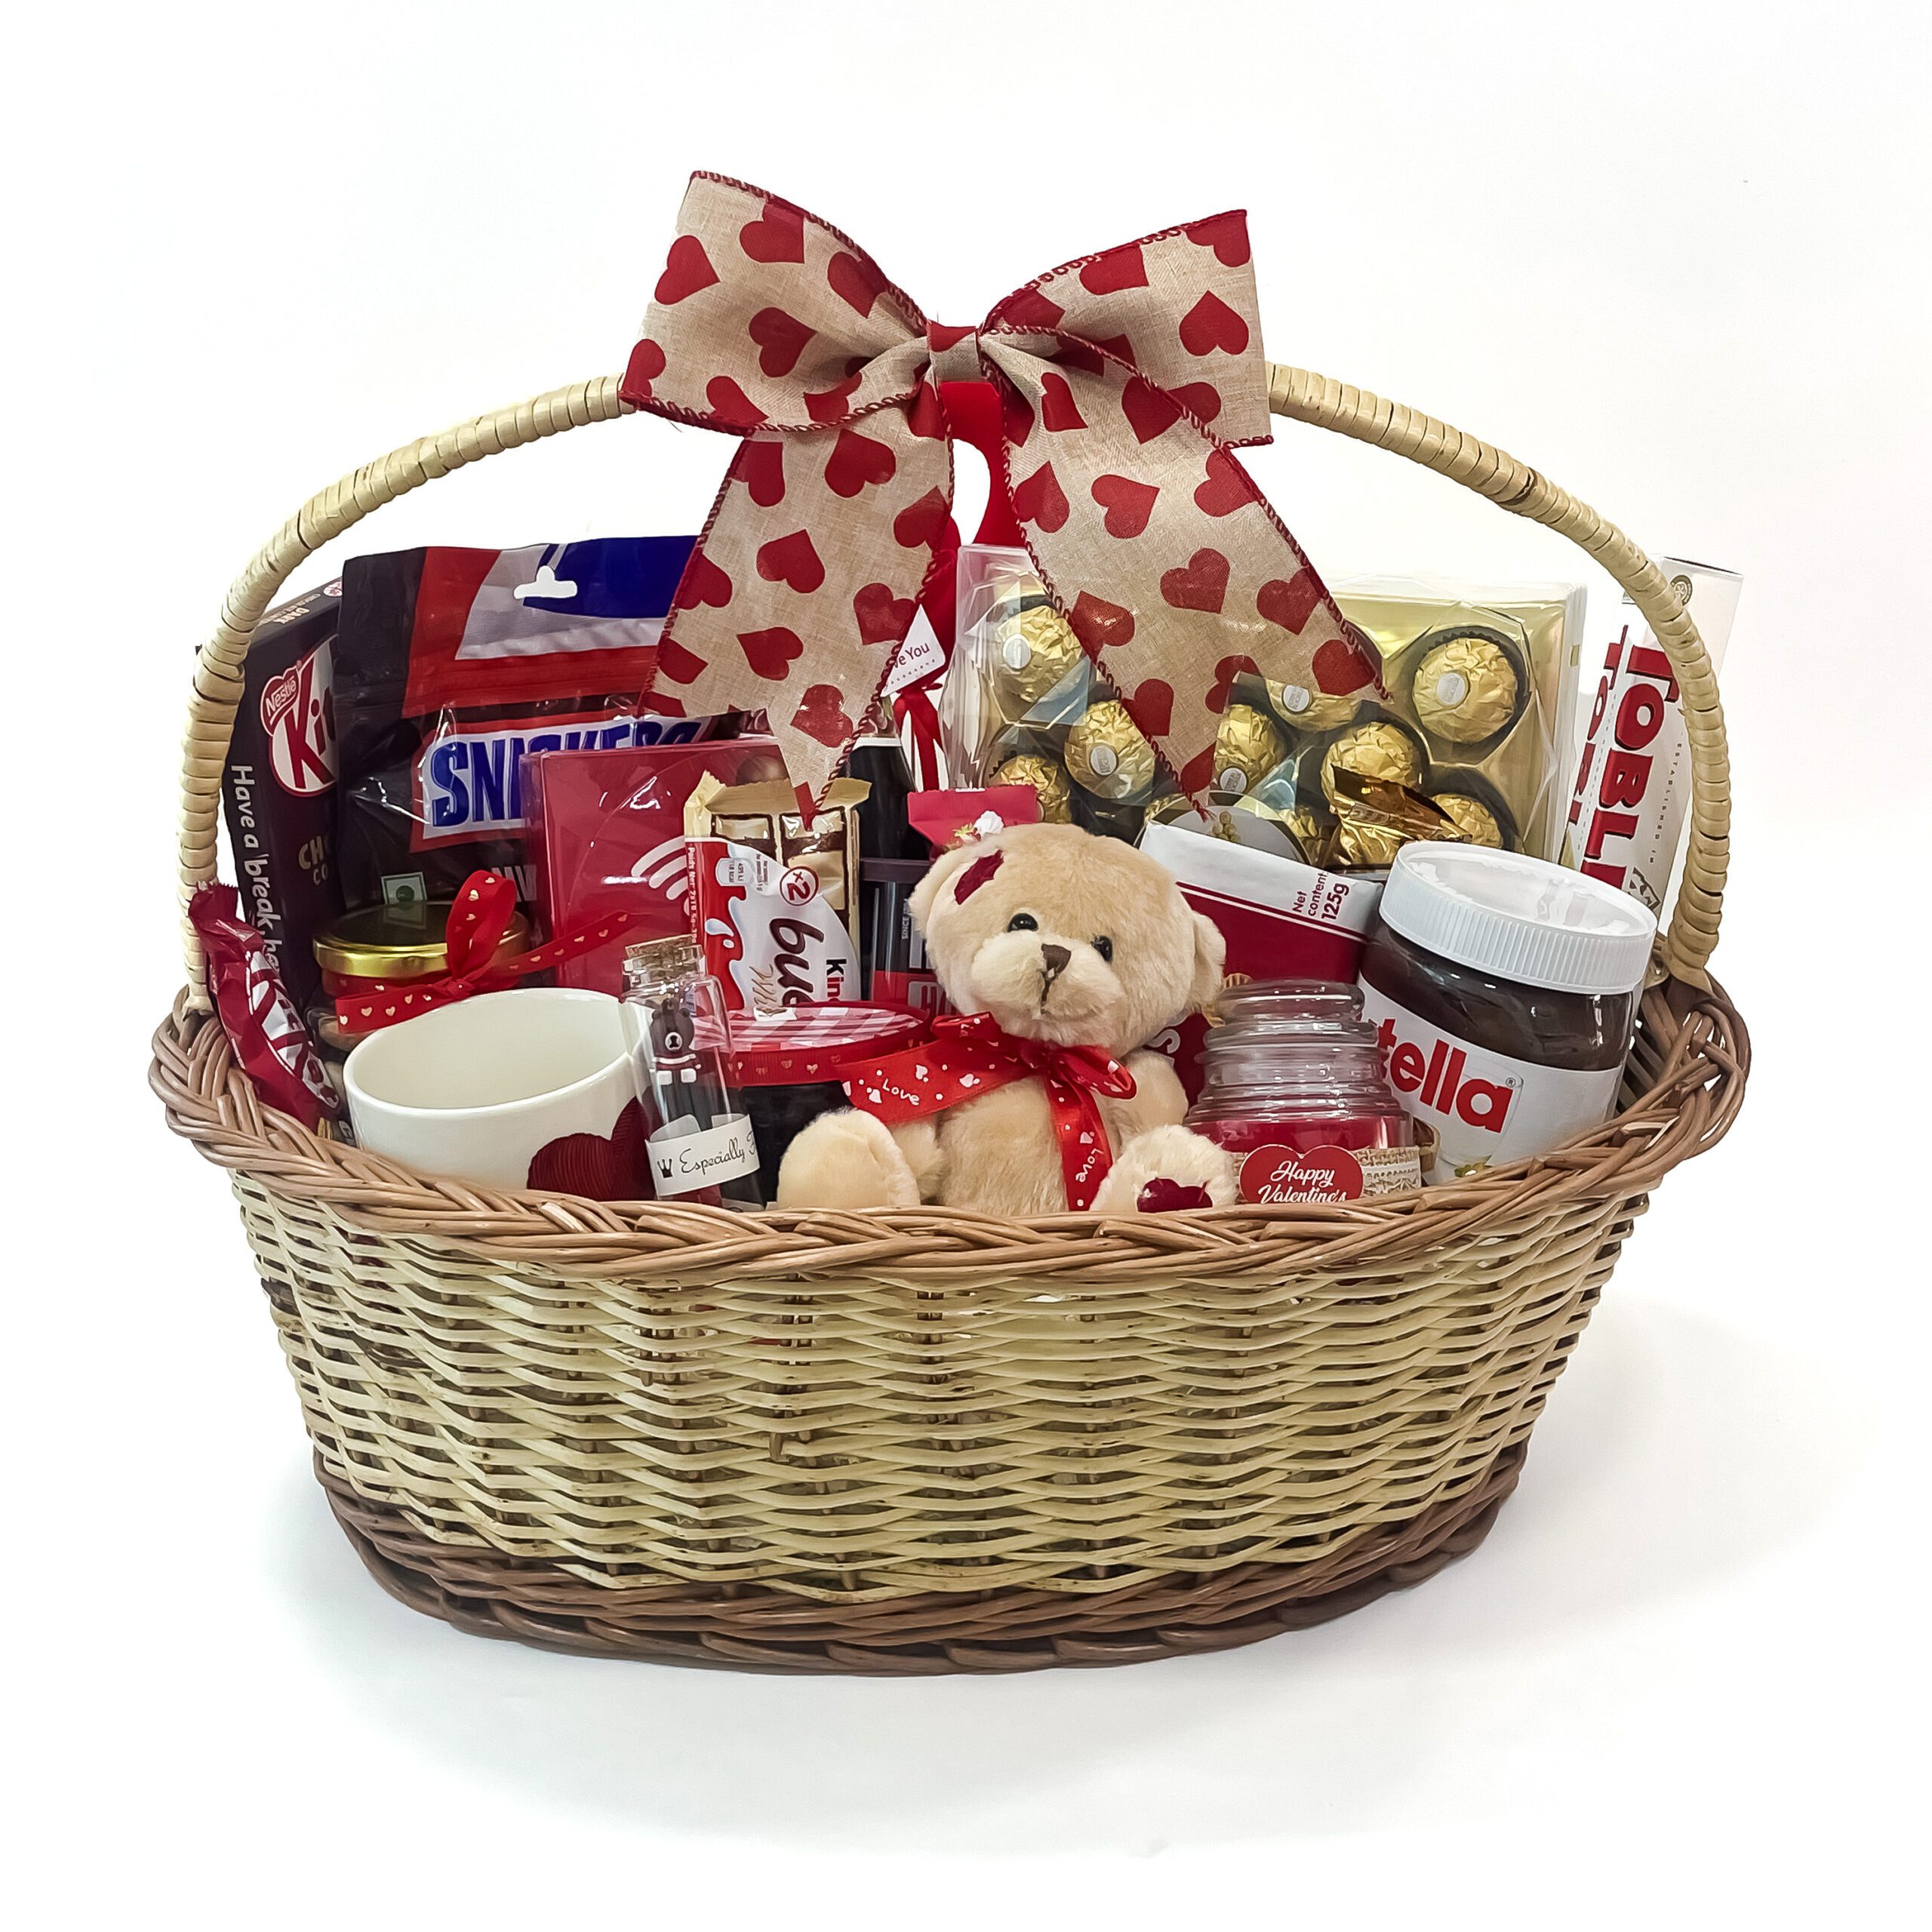 Gift Baskets For Men: 20 DIY Gift Baskets For Him That He Will Love |  Baskets for men, Gift baskets for him, Gift baskets for men